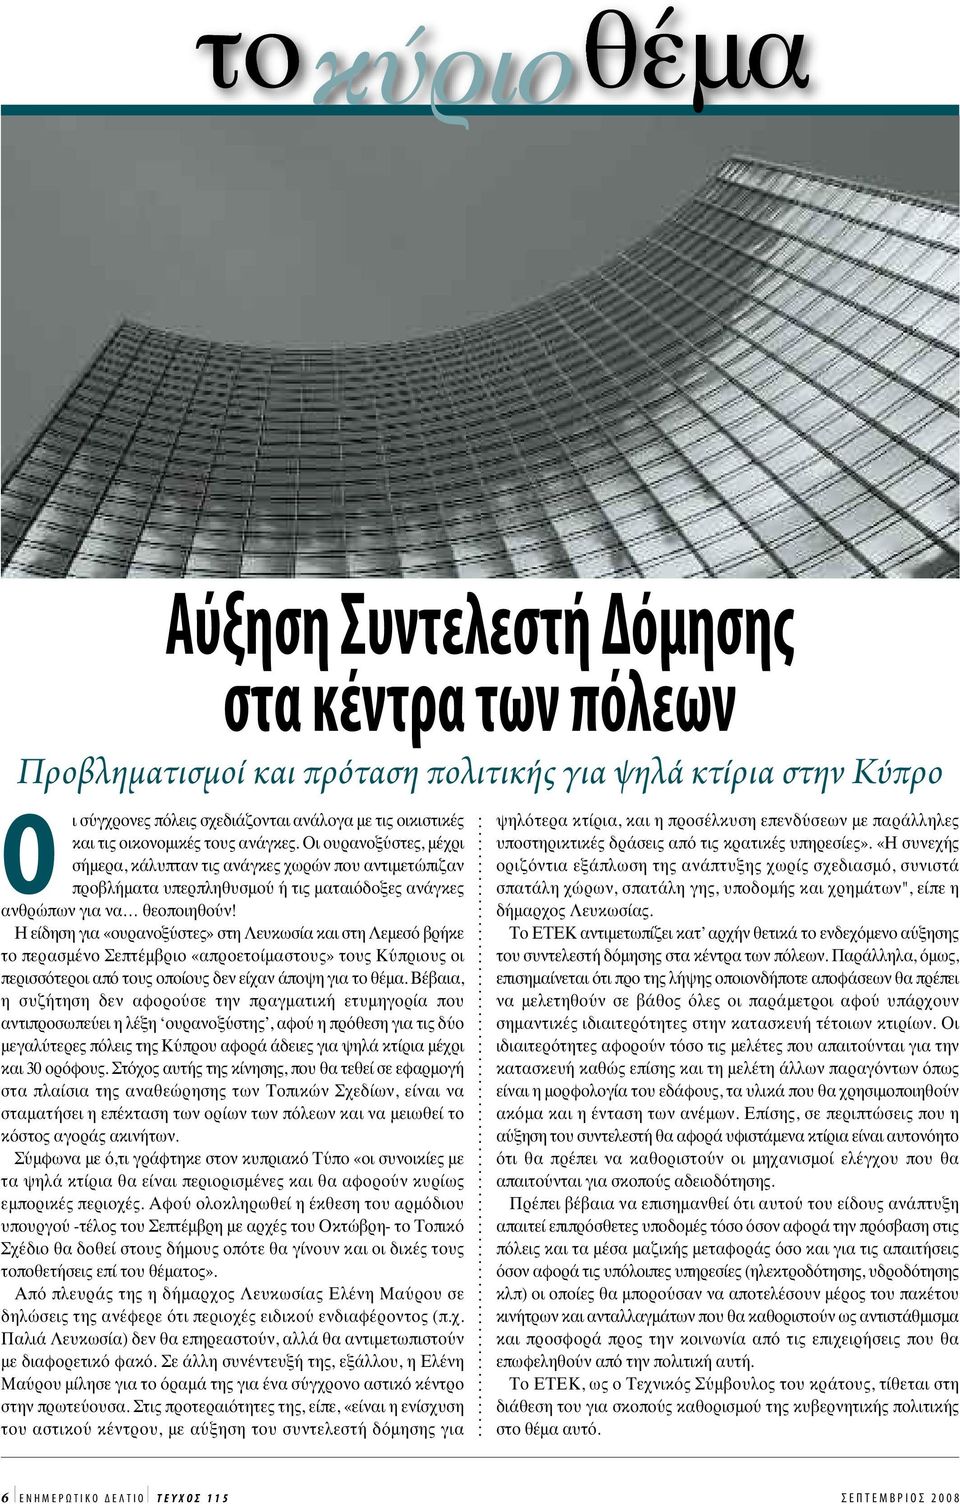 Η είδηση για «ουρανοξύστες» στη Λευκωσία και στη Λεμεσό βρήκε το περασμένο Σεπτέμβριο «απροετοίμαστους» τους Κύπριους οι περισσότεροι από τους οποίους δεν είχαν άποψη για το θέμα.